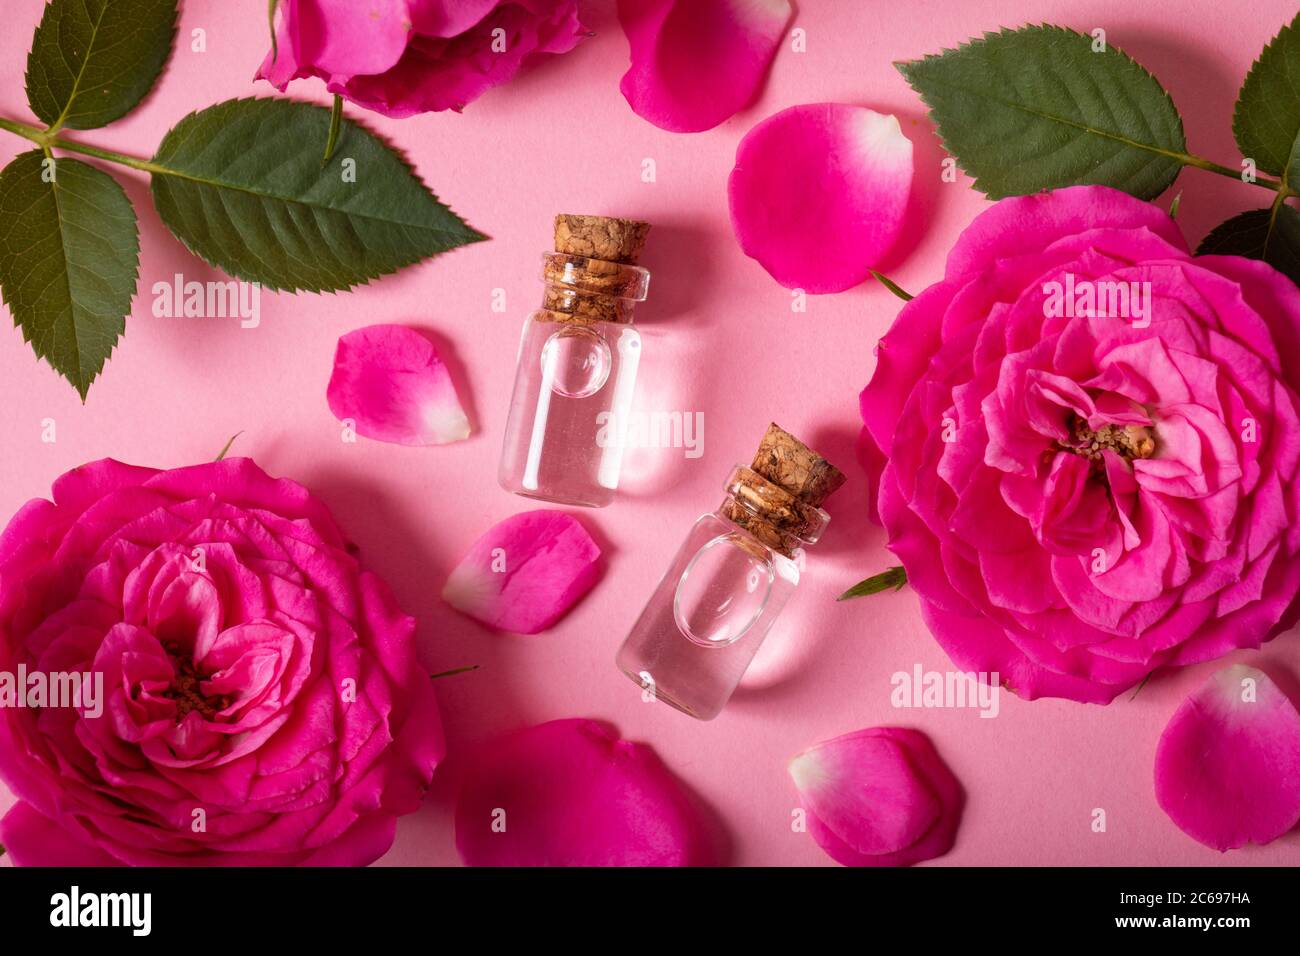 Rosenwasser oder ätherisches Öl in Glasflaschen mit rosa frischen Rosenblüten und Blütenblättern auf rosa Hintergrund. Draufsicht Stockfoto